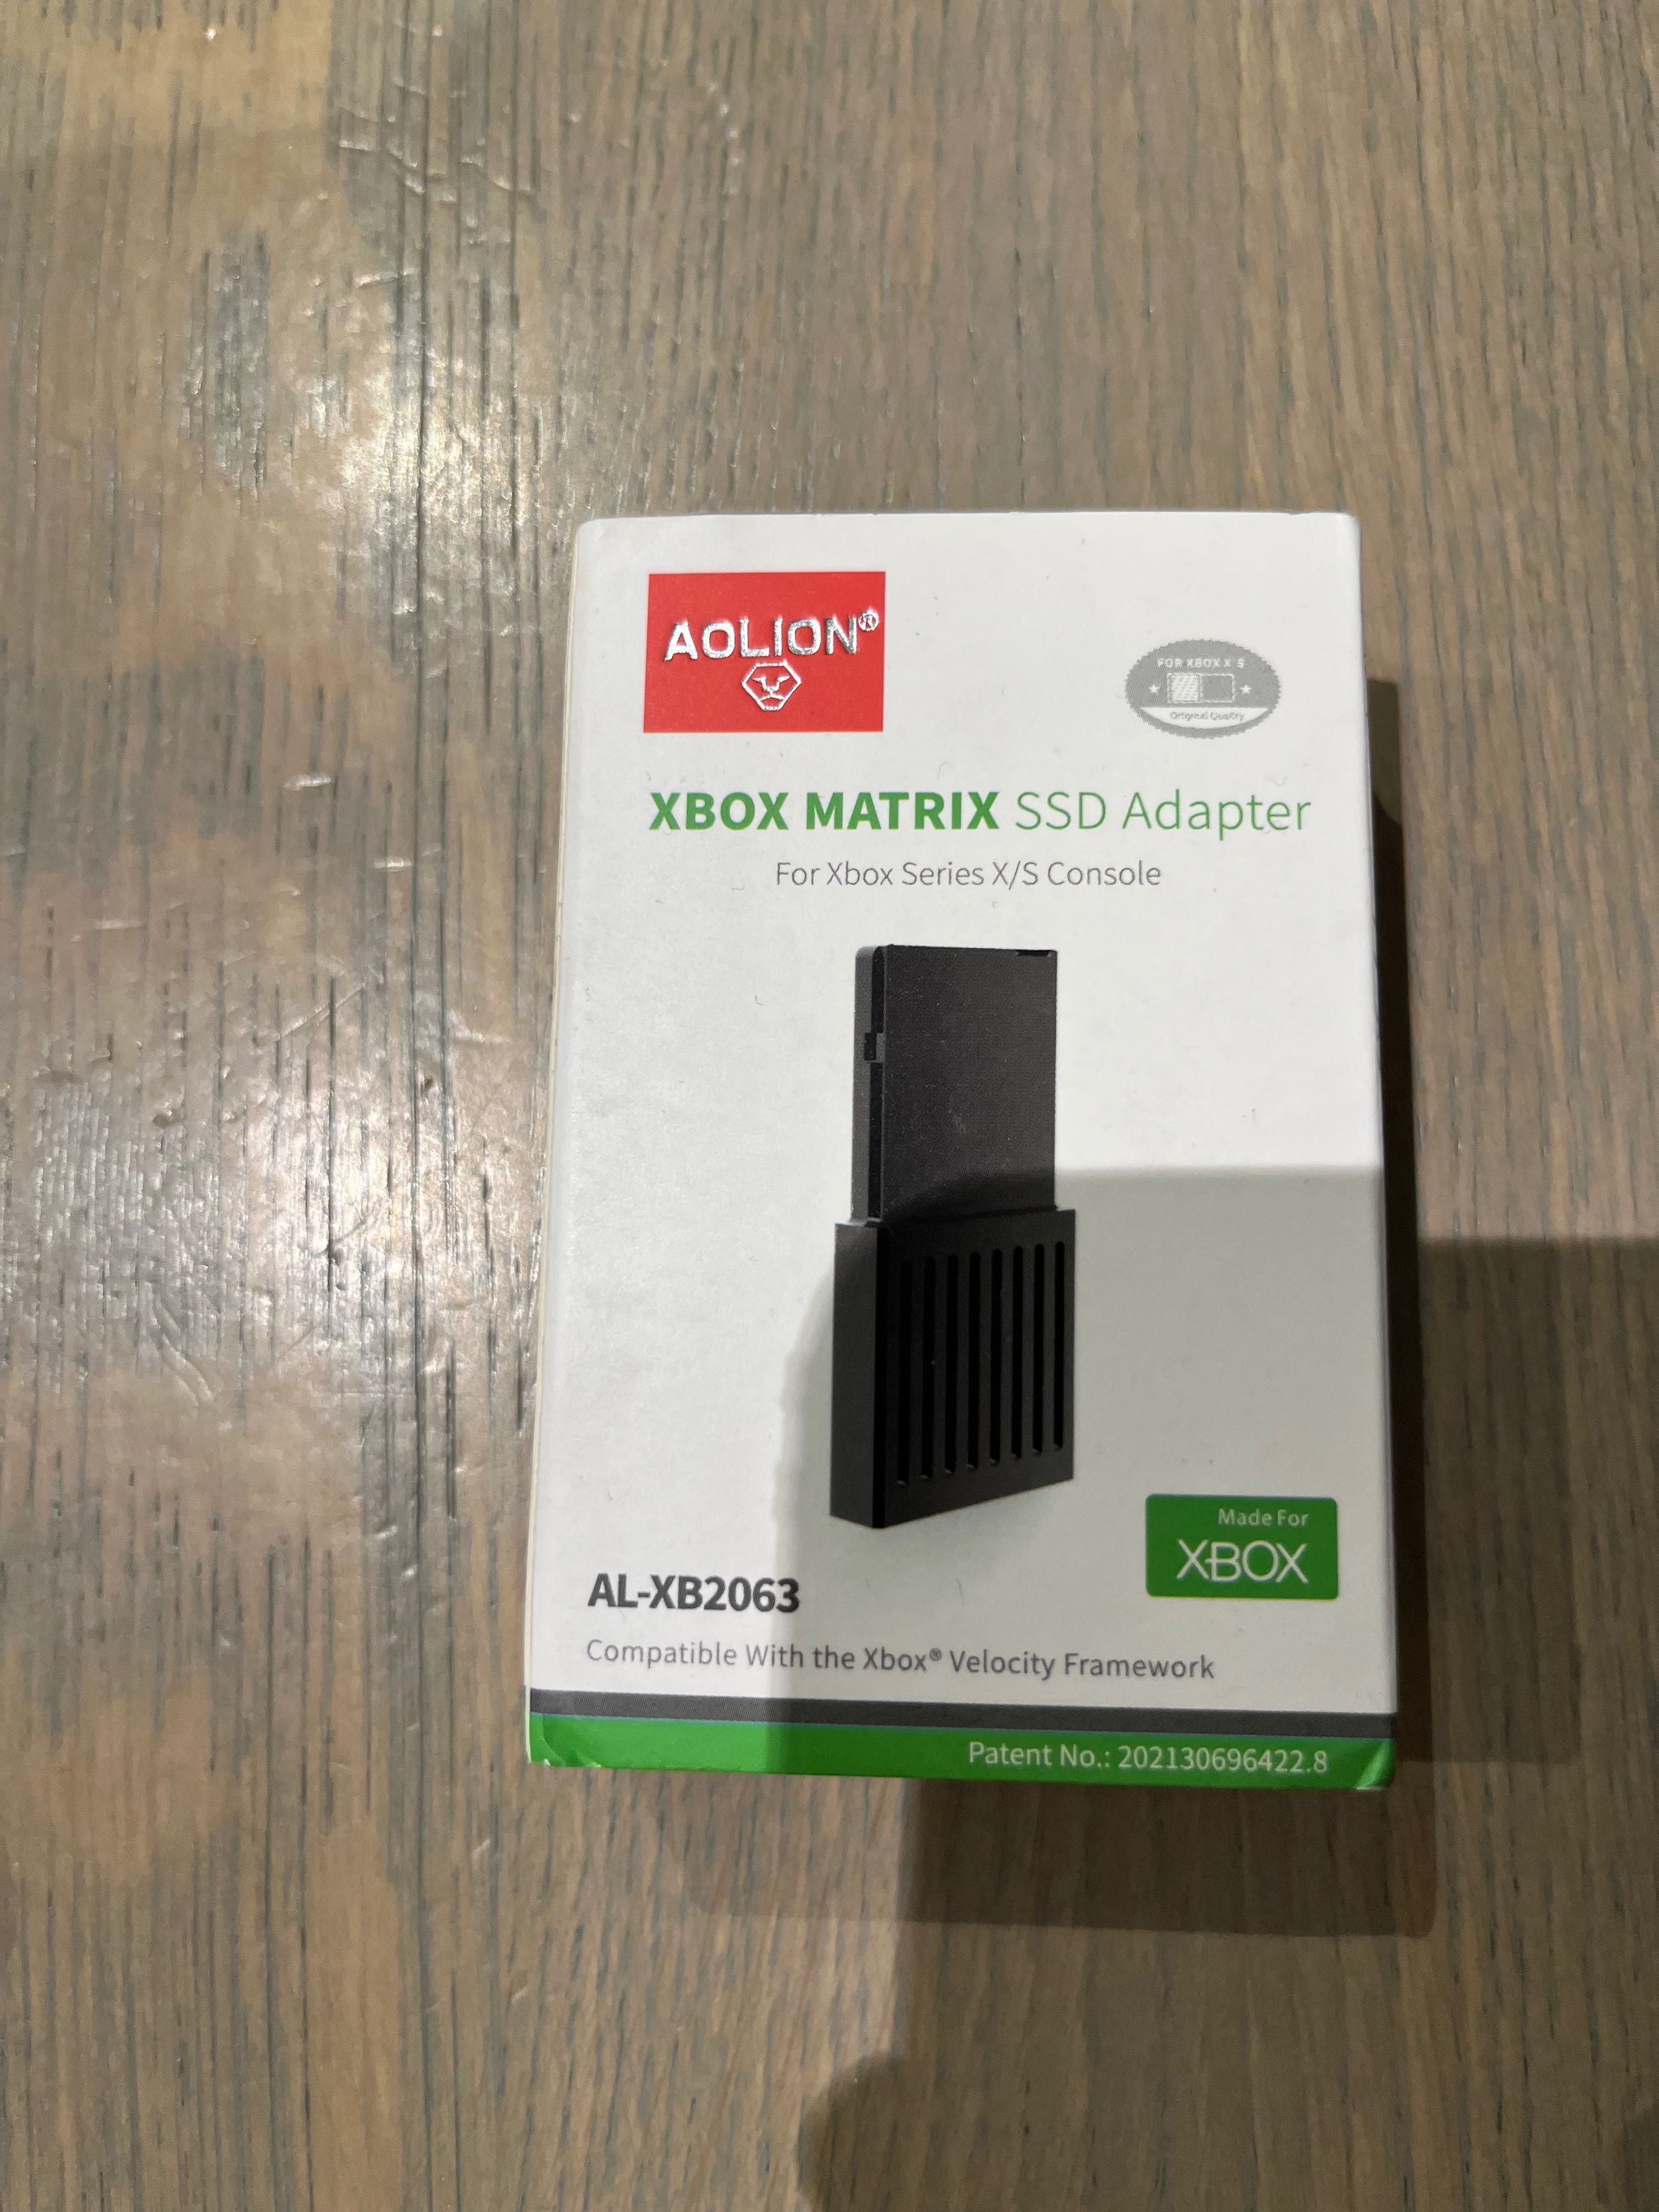 OKAZJA - Xbox matrix SSD Adapter - nowy